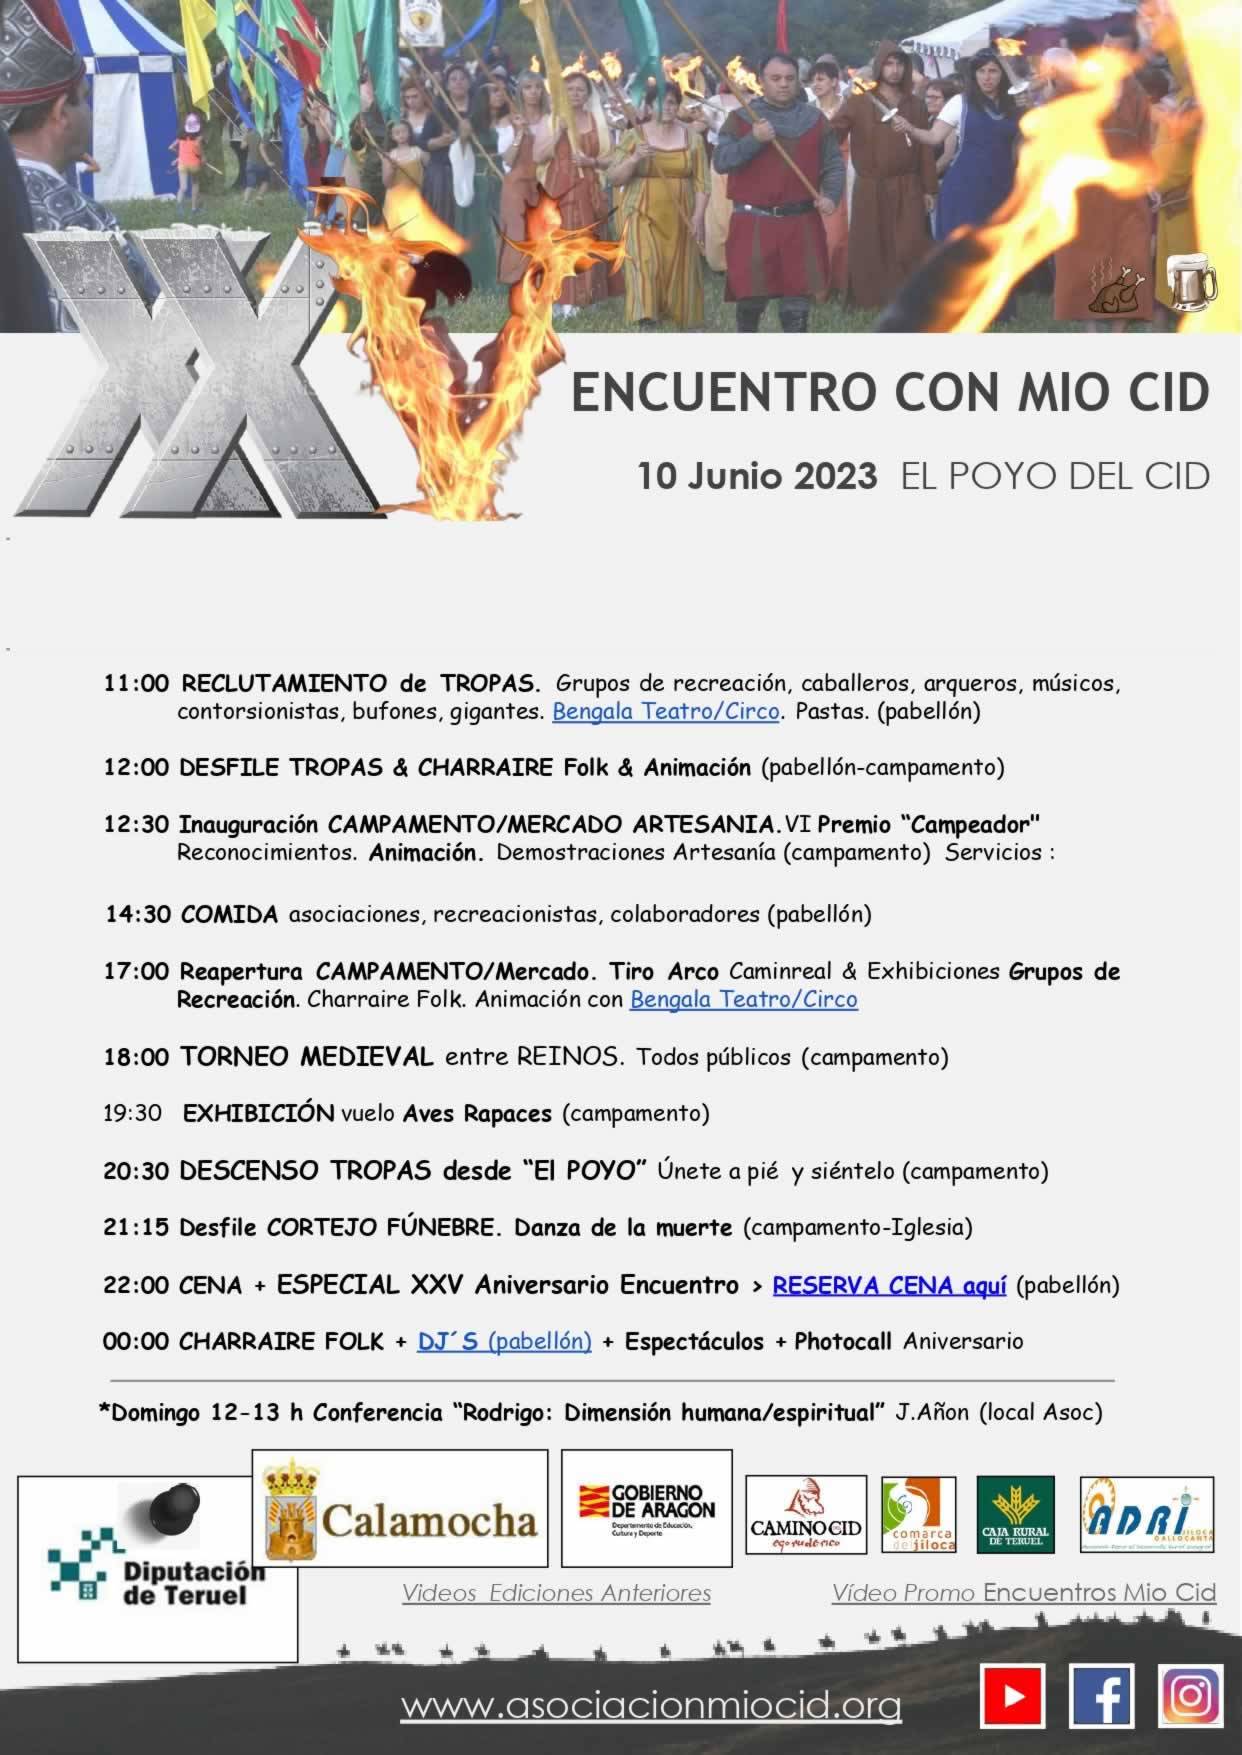 El Encuentro con Mío Cid celebra su 25 aniversario el 10 de junio en El Poyo